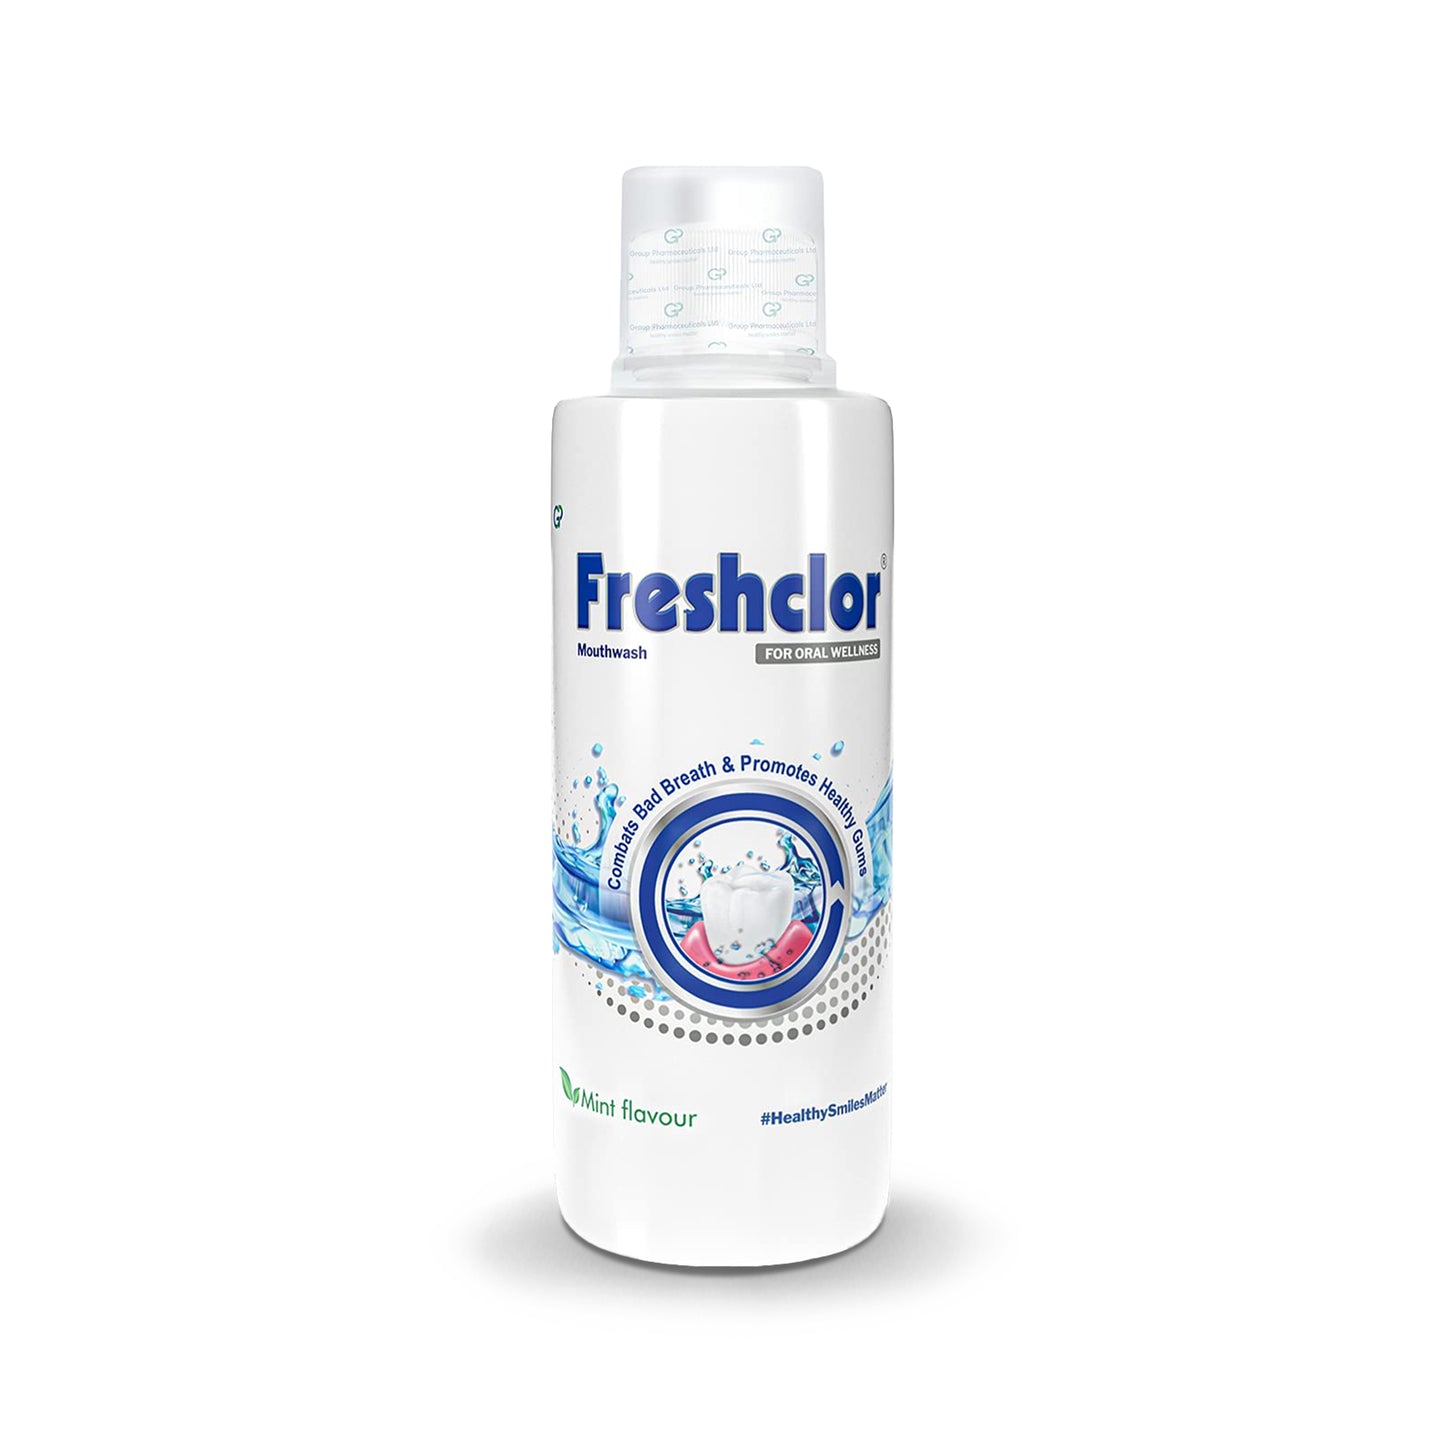 Freshclor Mouthwash, 200ml